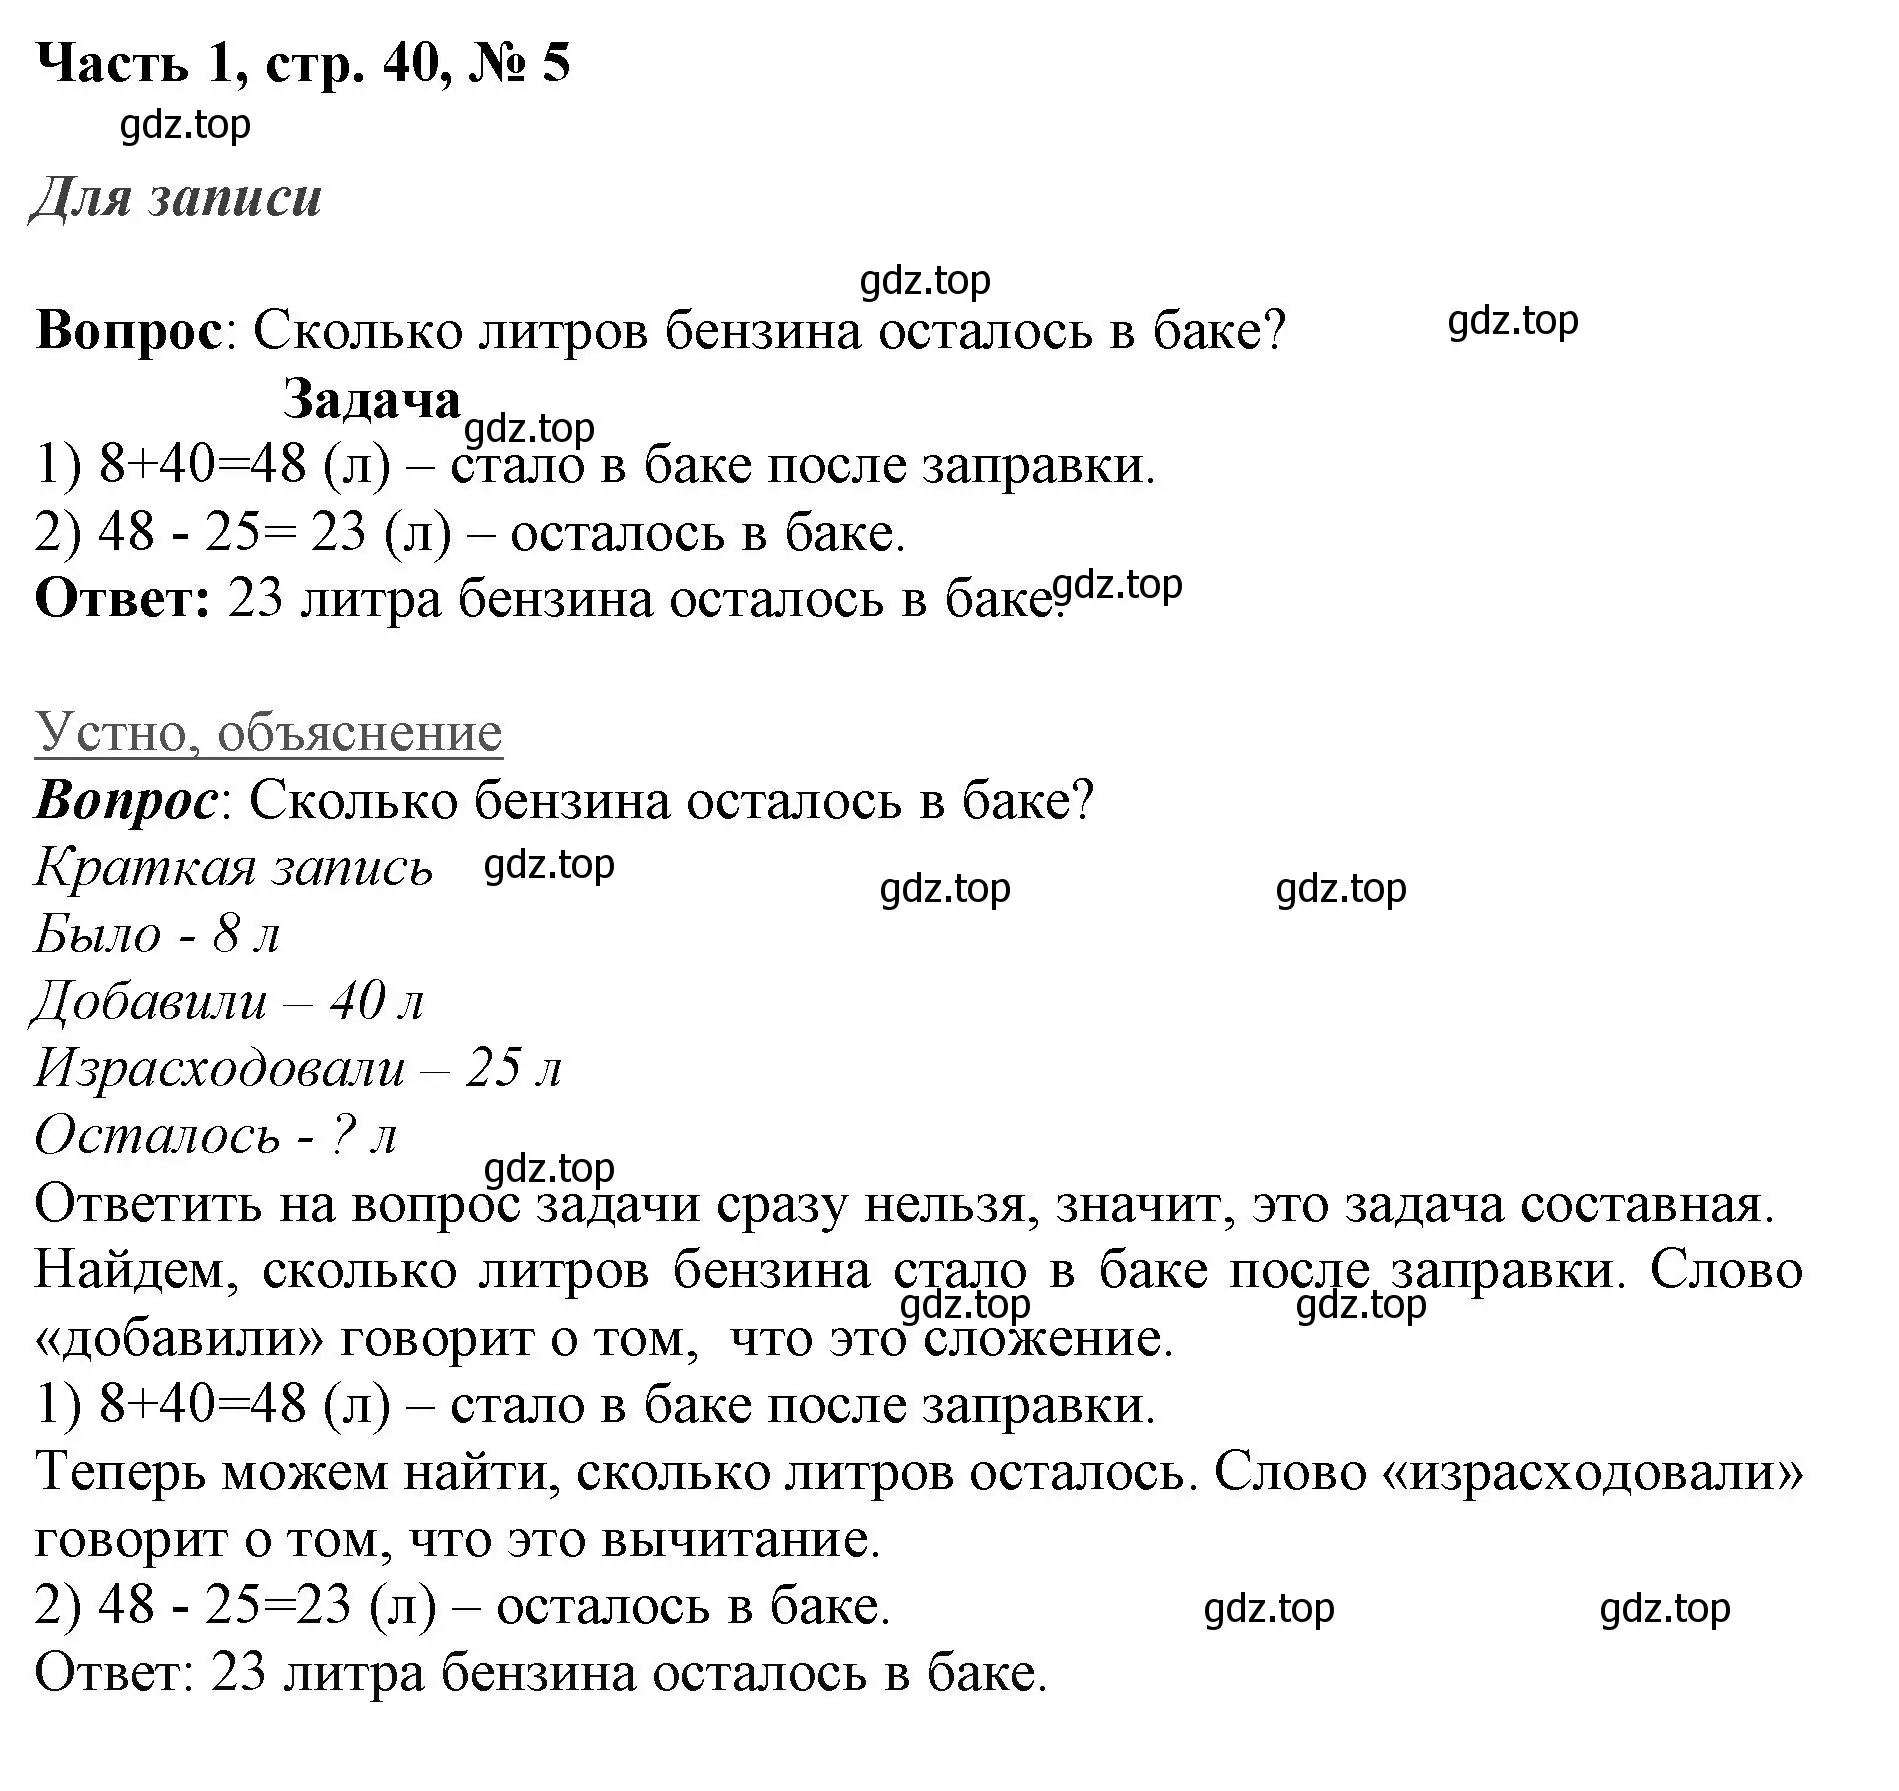 Решение номер 5 (страница 40) гдз по математике 3 класс Моро, Бантова, учебник 1 часть